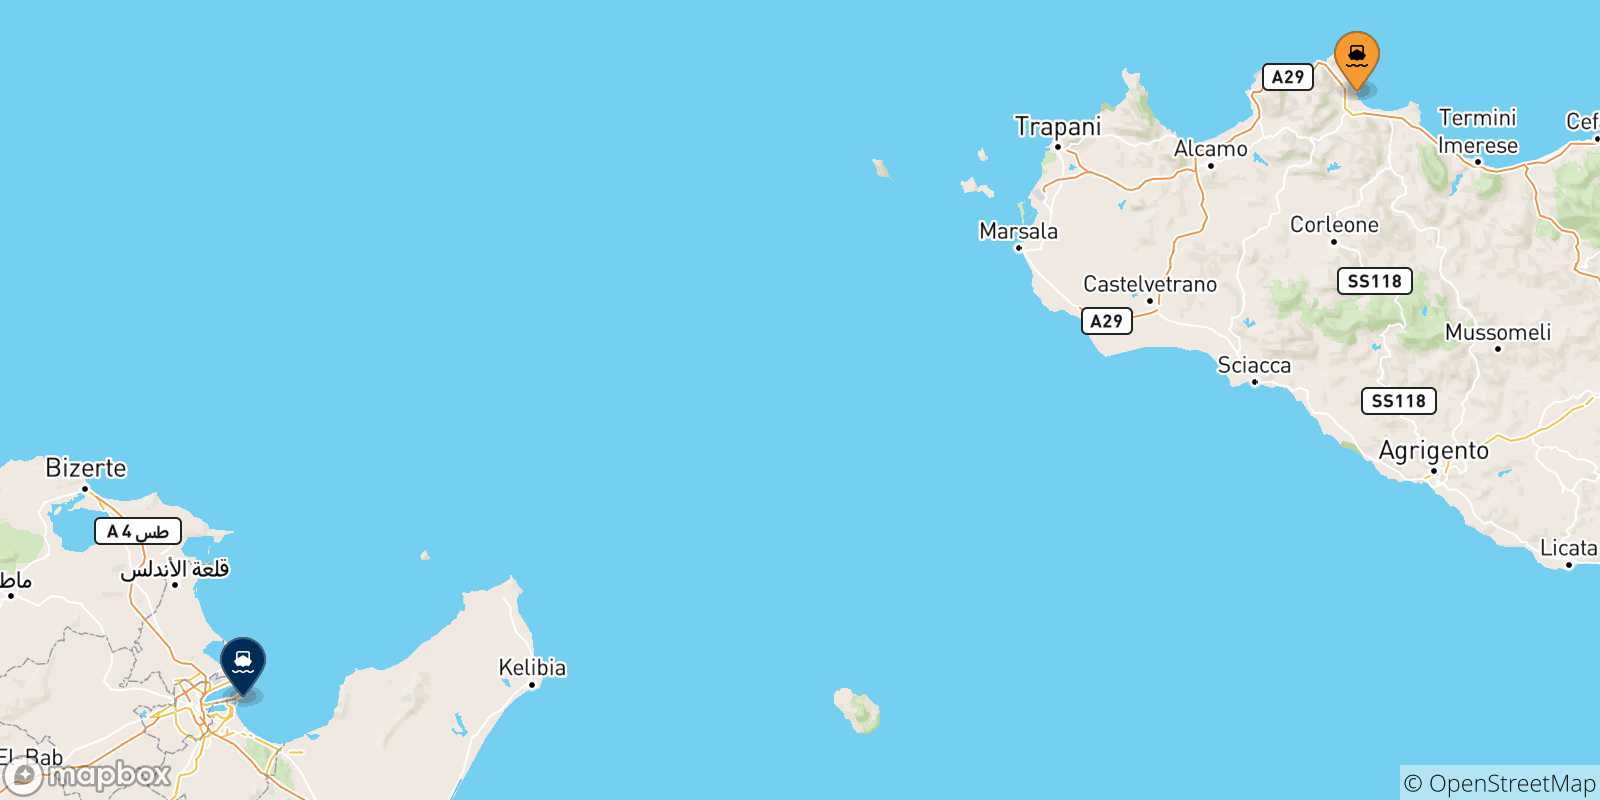 Mappa delle possibili rotte tra la Sicilia e la Tunisia